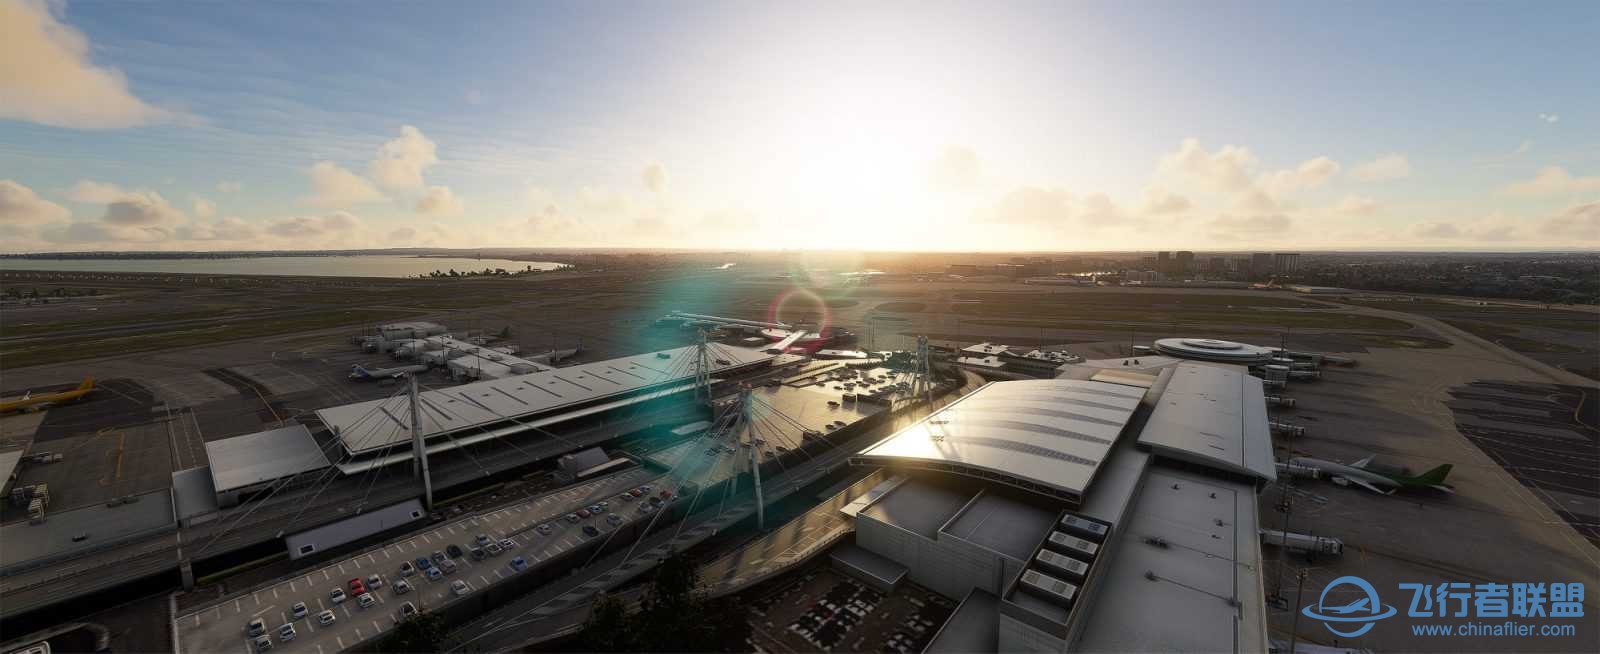 FlyTampa悉尼机场预览和加入Orbx合作计划-6921 